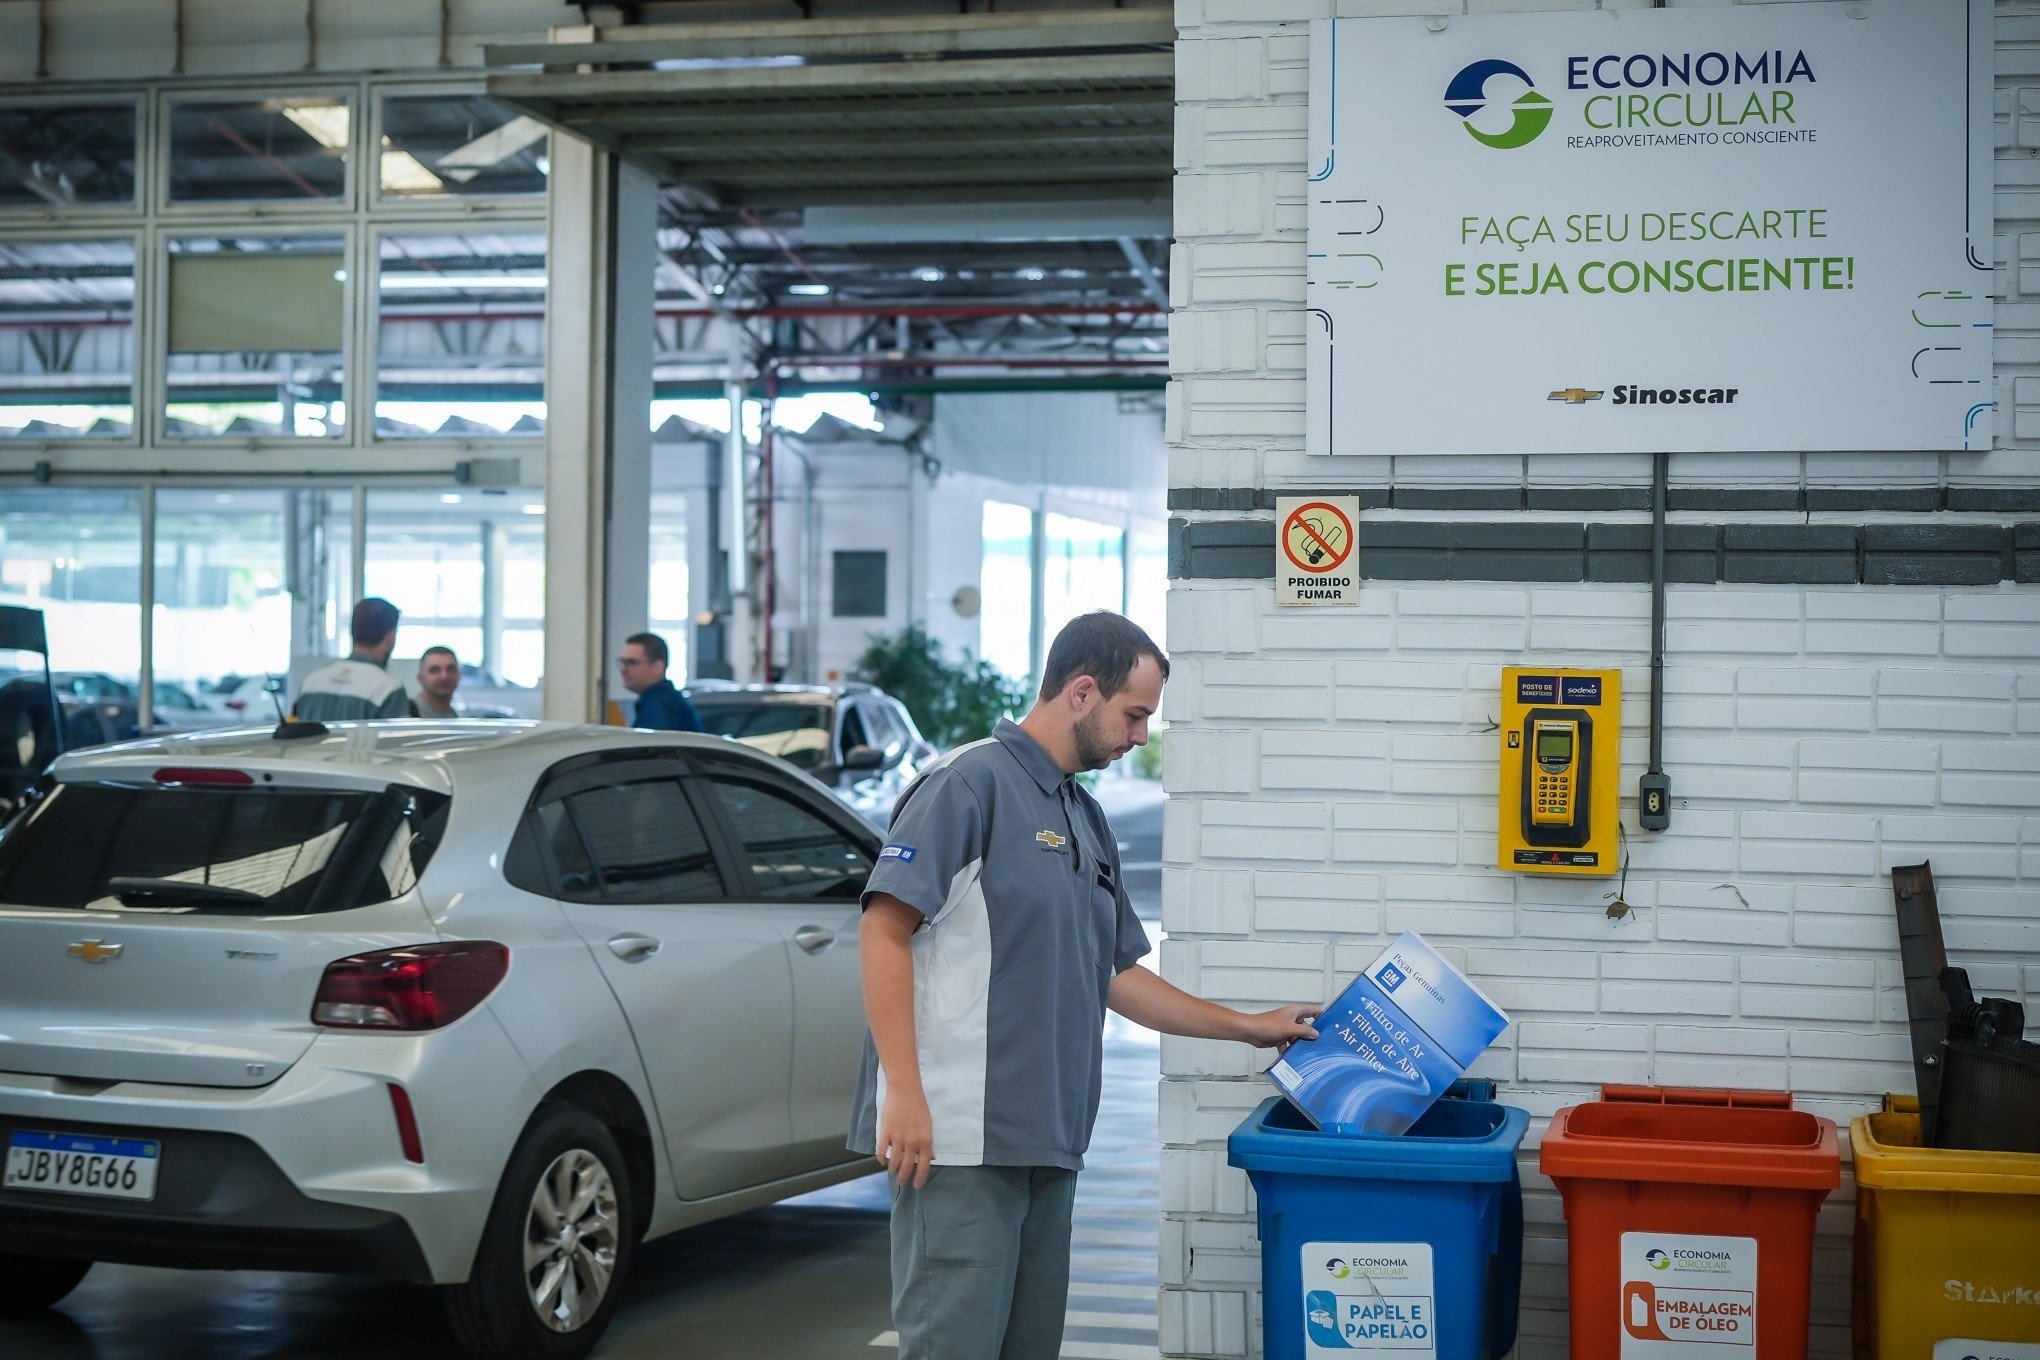 Programa de economia circular de empresa da região gerencia quase 93 toneladas de resíduos em um ano